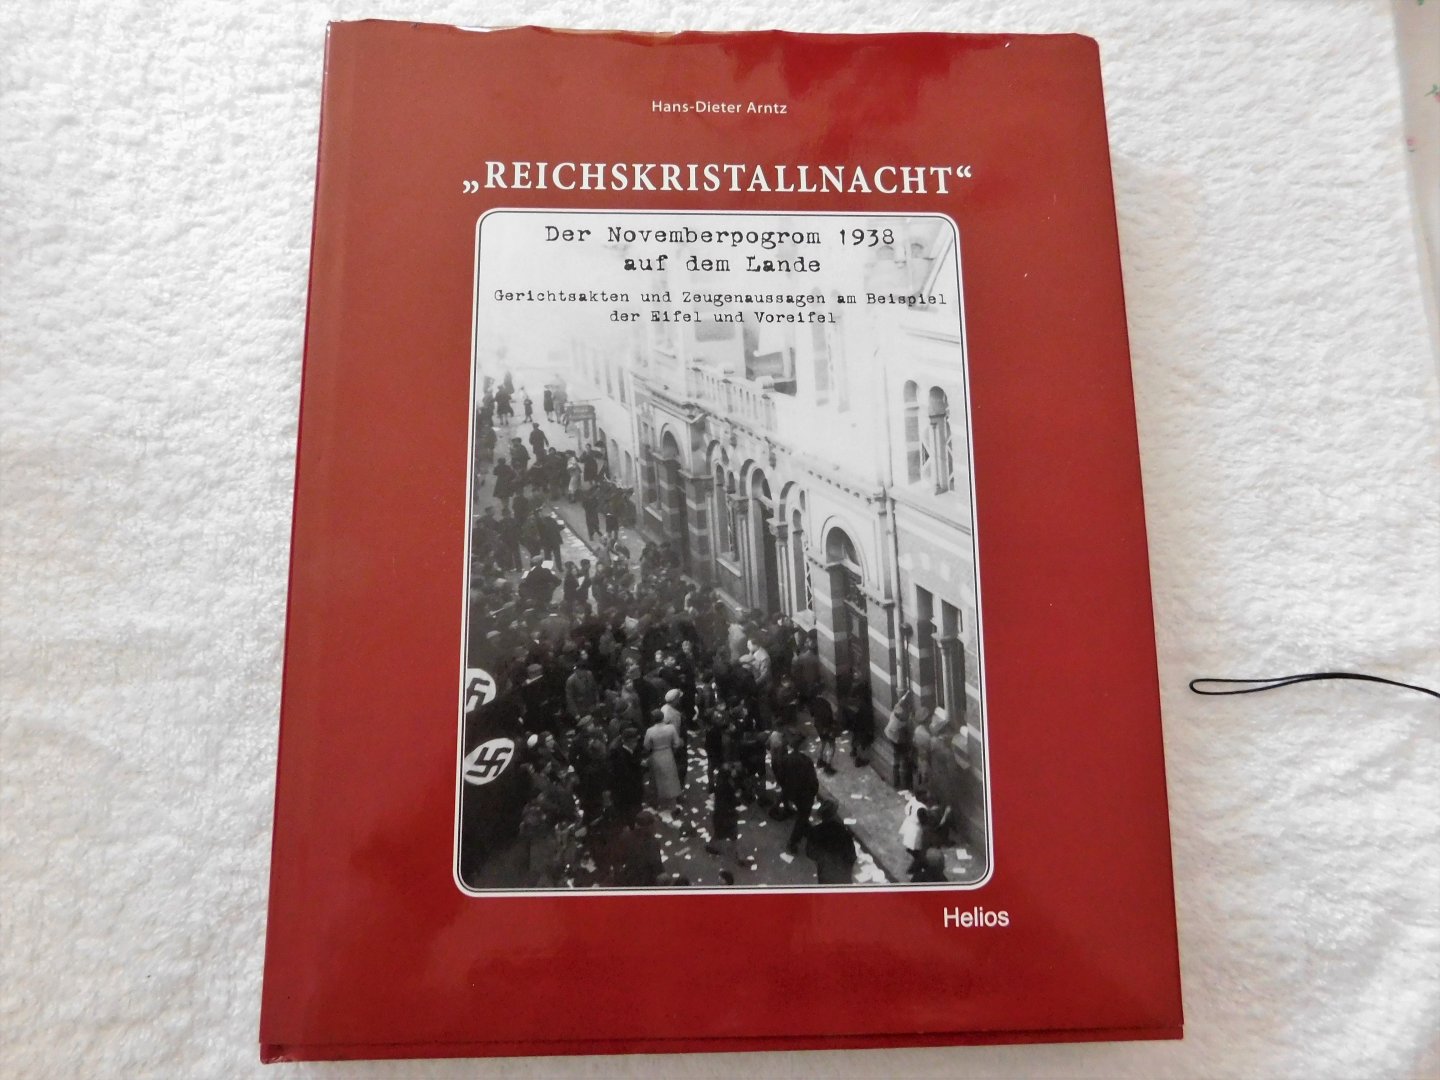 Hans-Dieter- Arntz - Reichskristallnacht